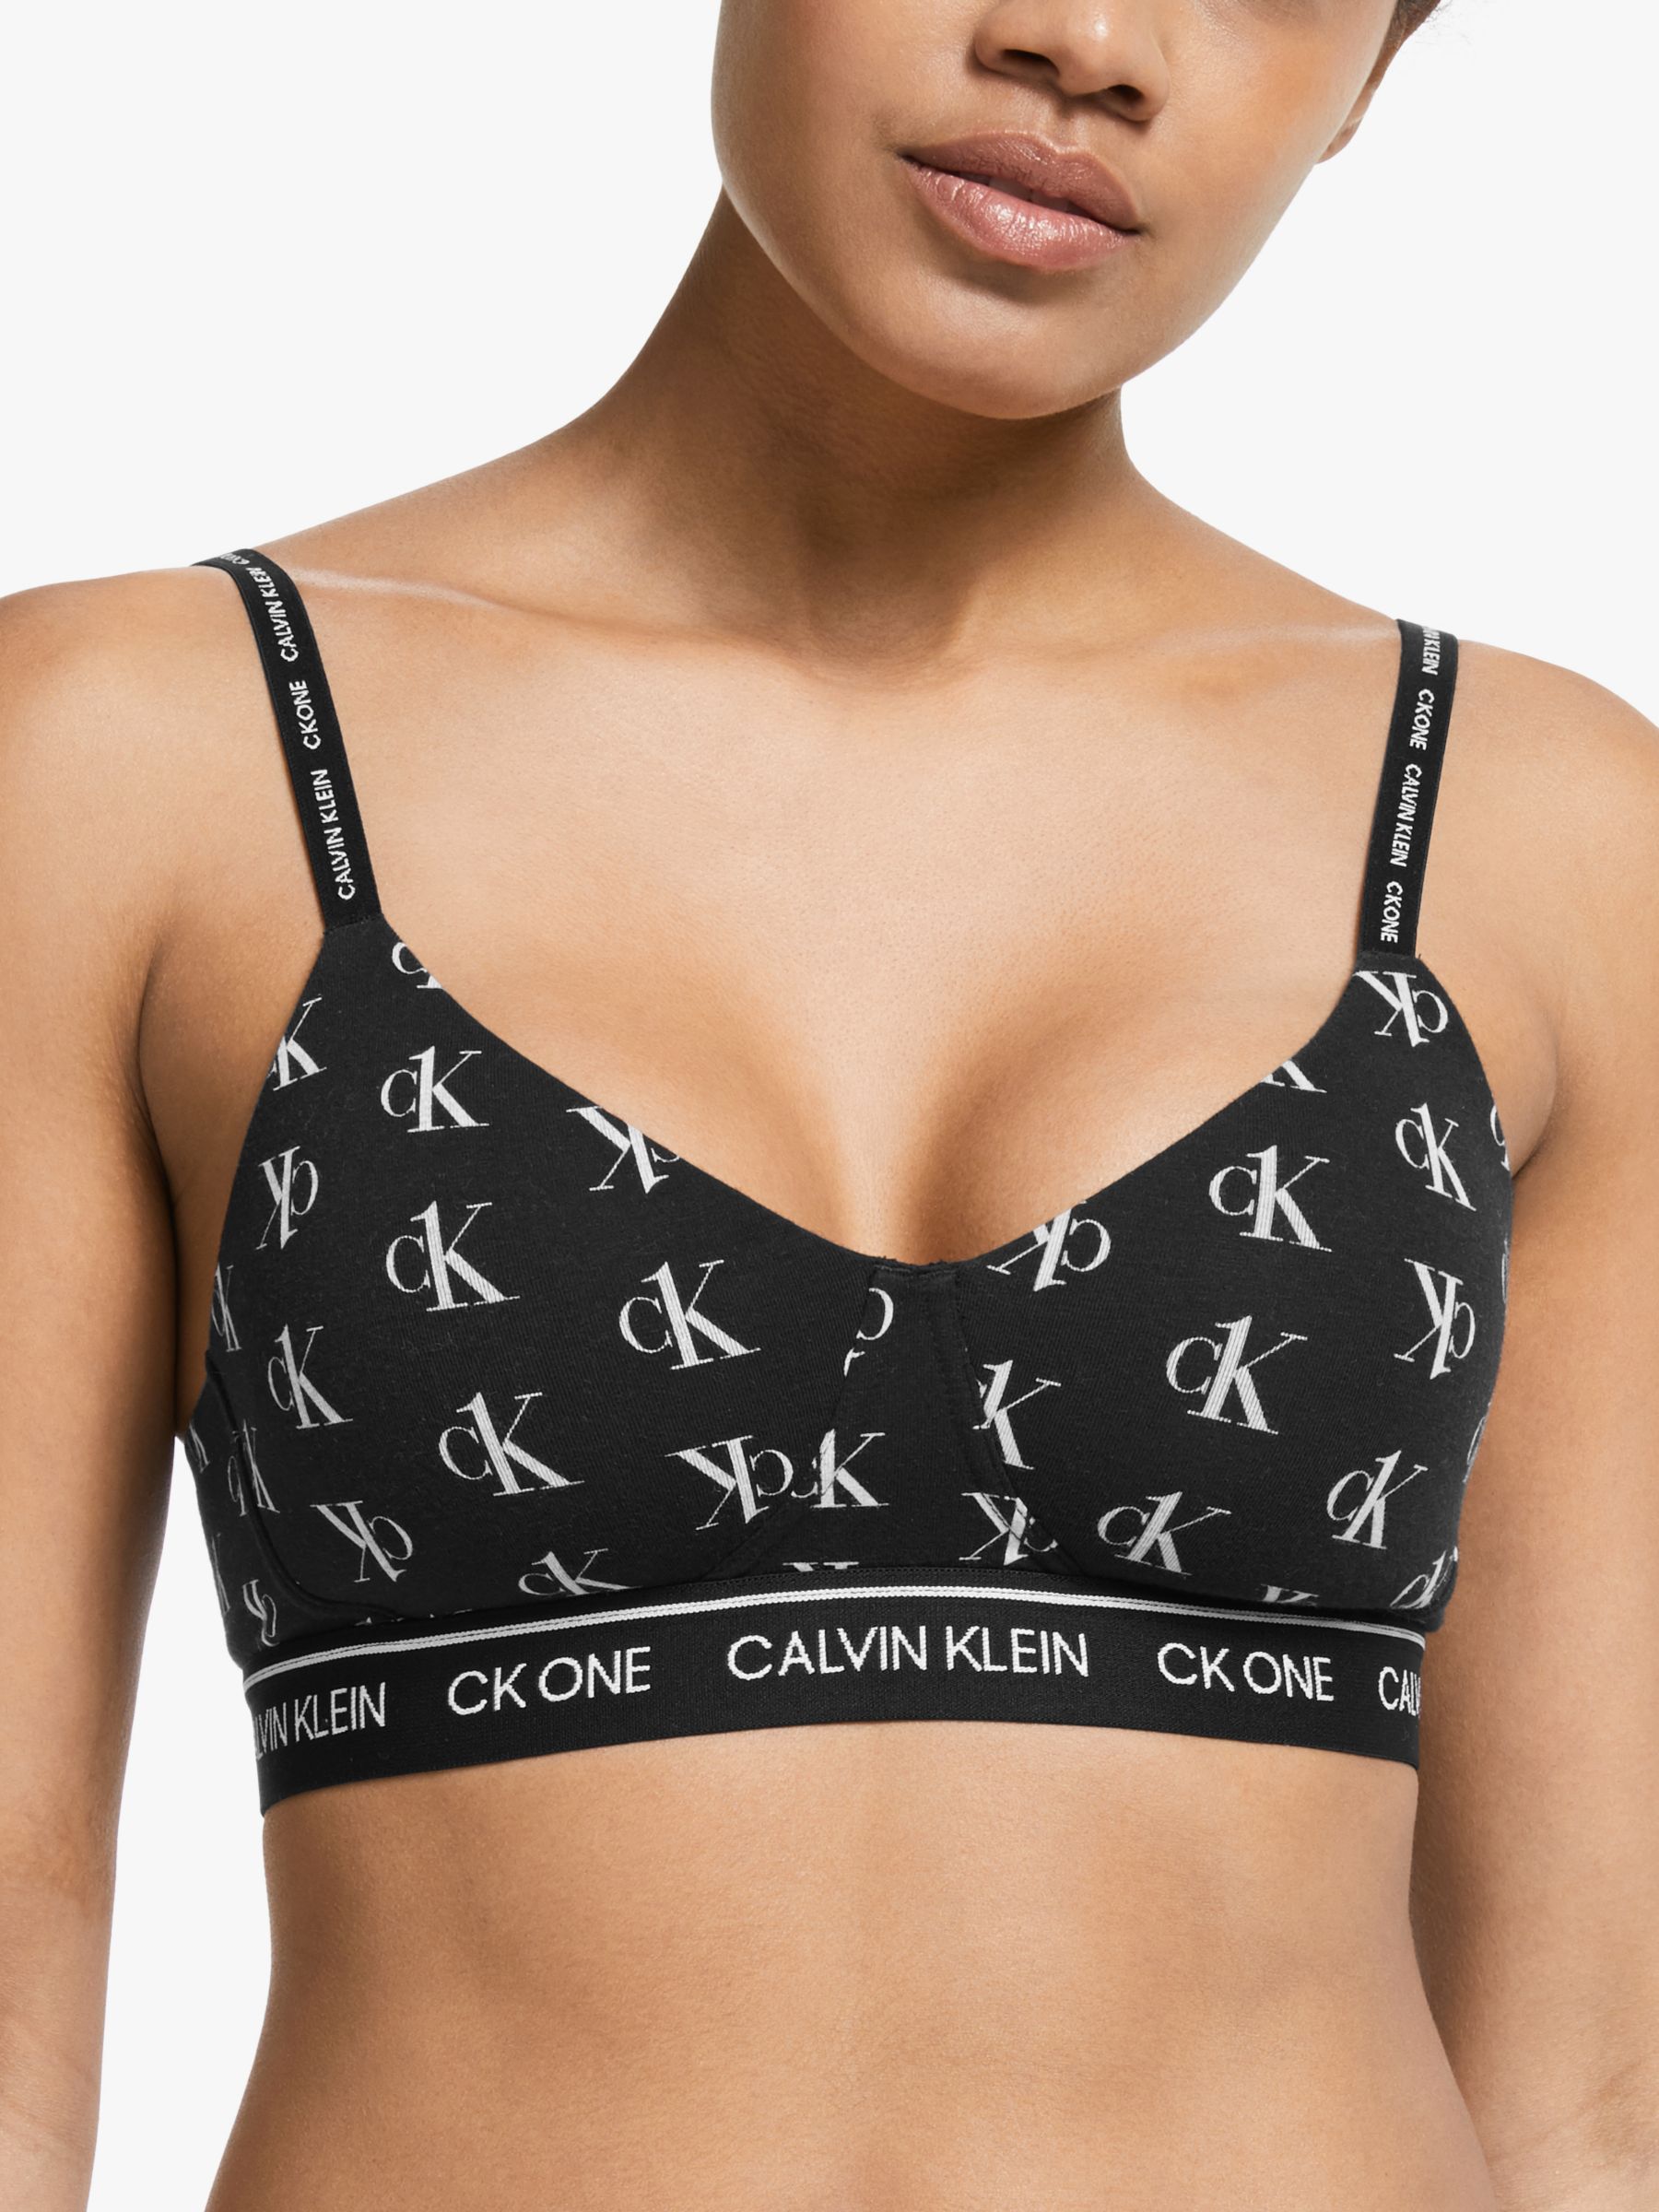 CK logo bralette, Calvin Klein